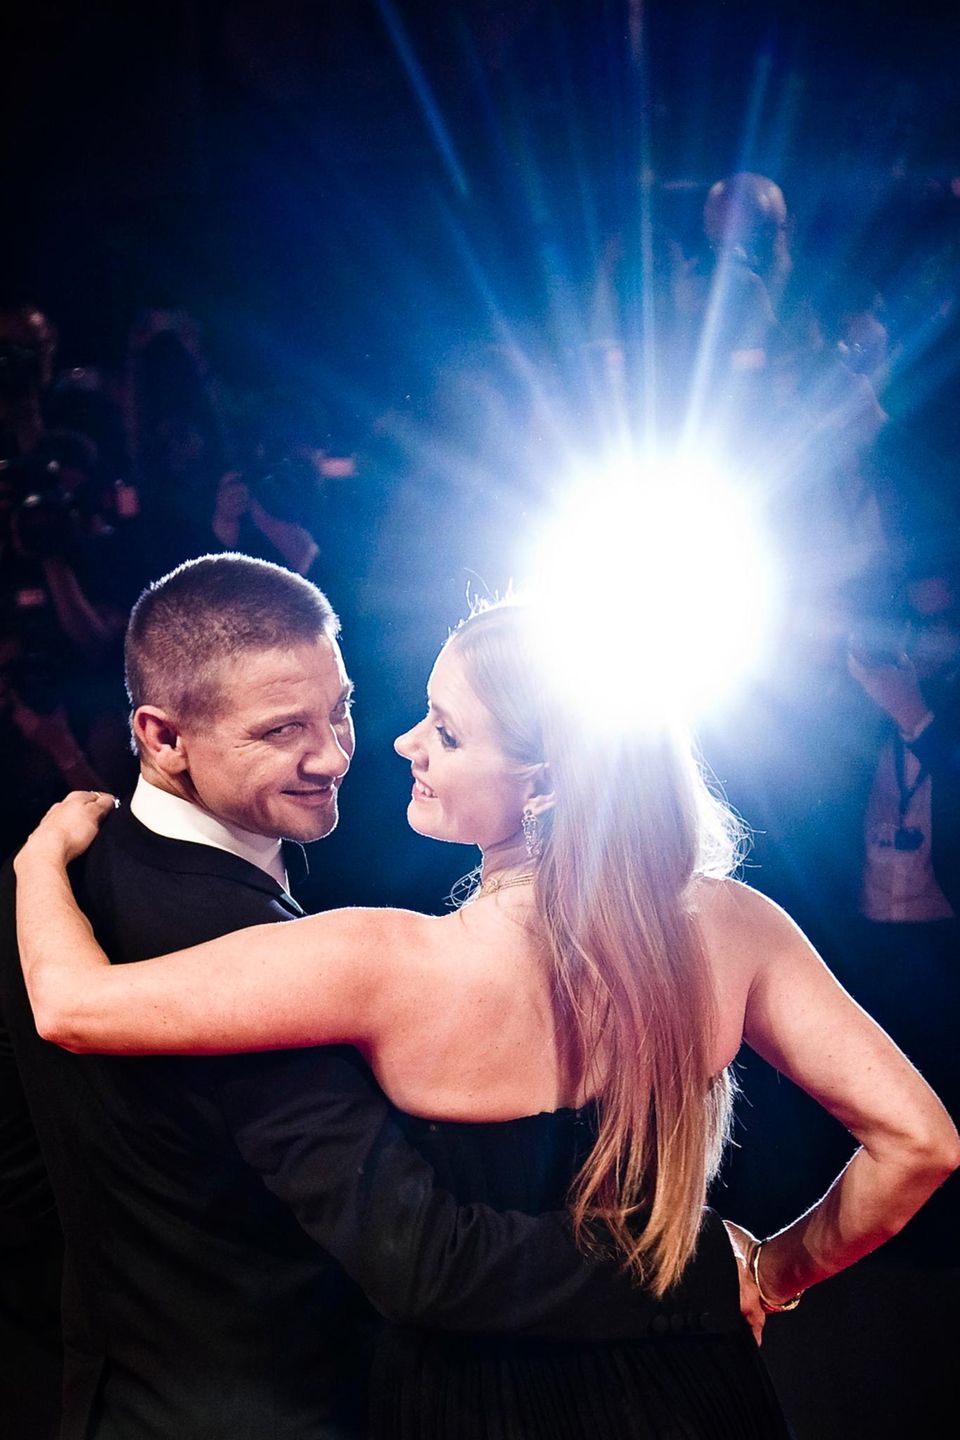 Bei der "Arrival"-Premiere strahlen Jeremy Renner und Amy Adams mit dem Blitzlicht um die Wette.